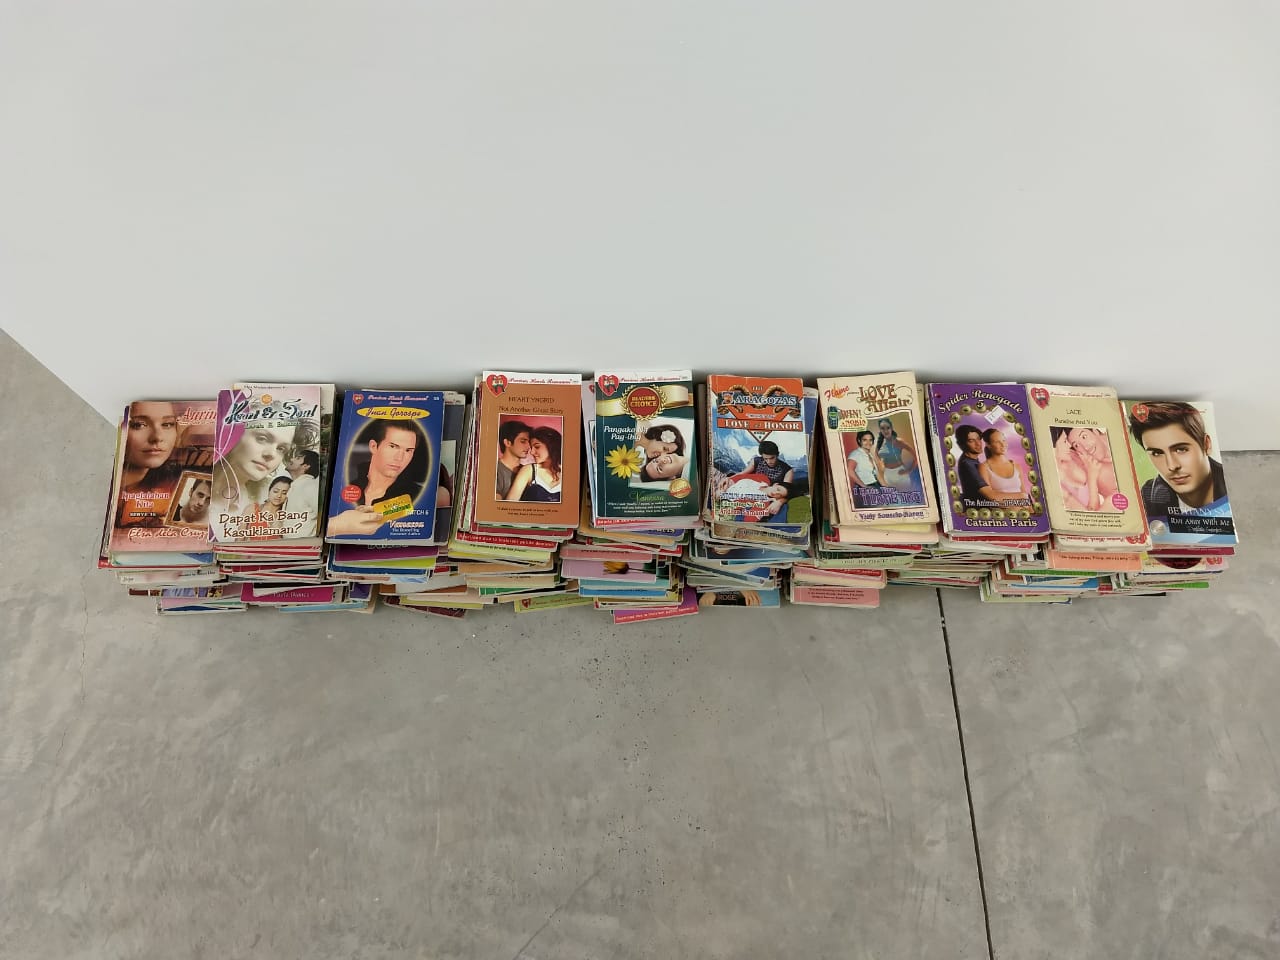 Libros apilados en una galería de arte. Bienal de Sharjah.